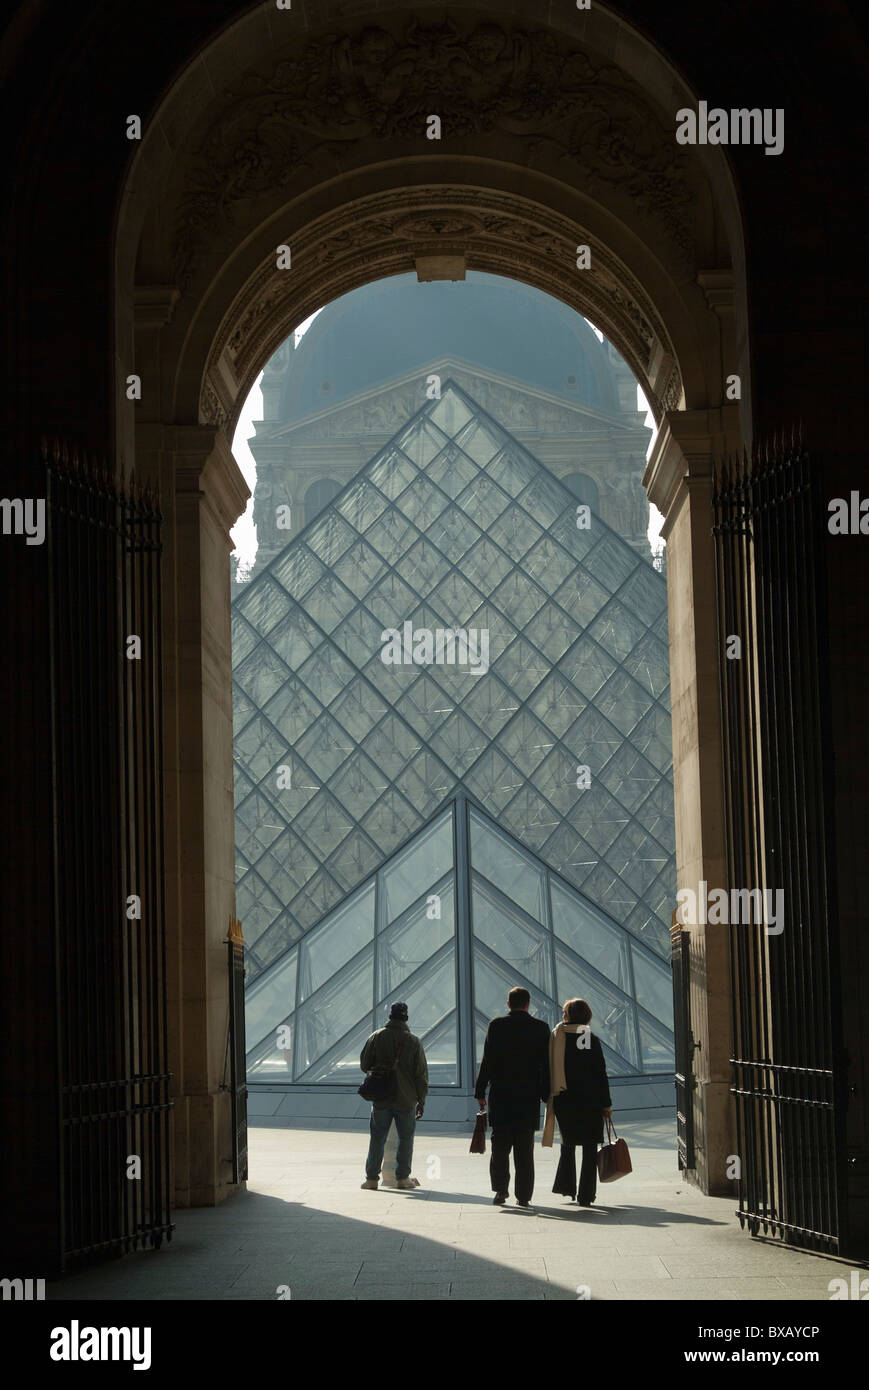 La Pirámide del Louvre, visto desde una gran arcada, París, Francia. Foto de stock